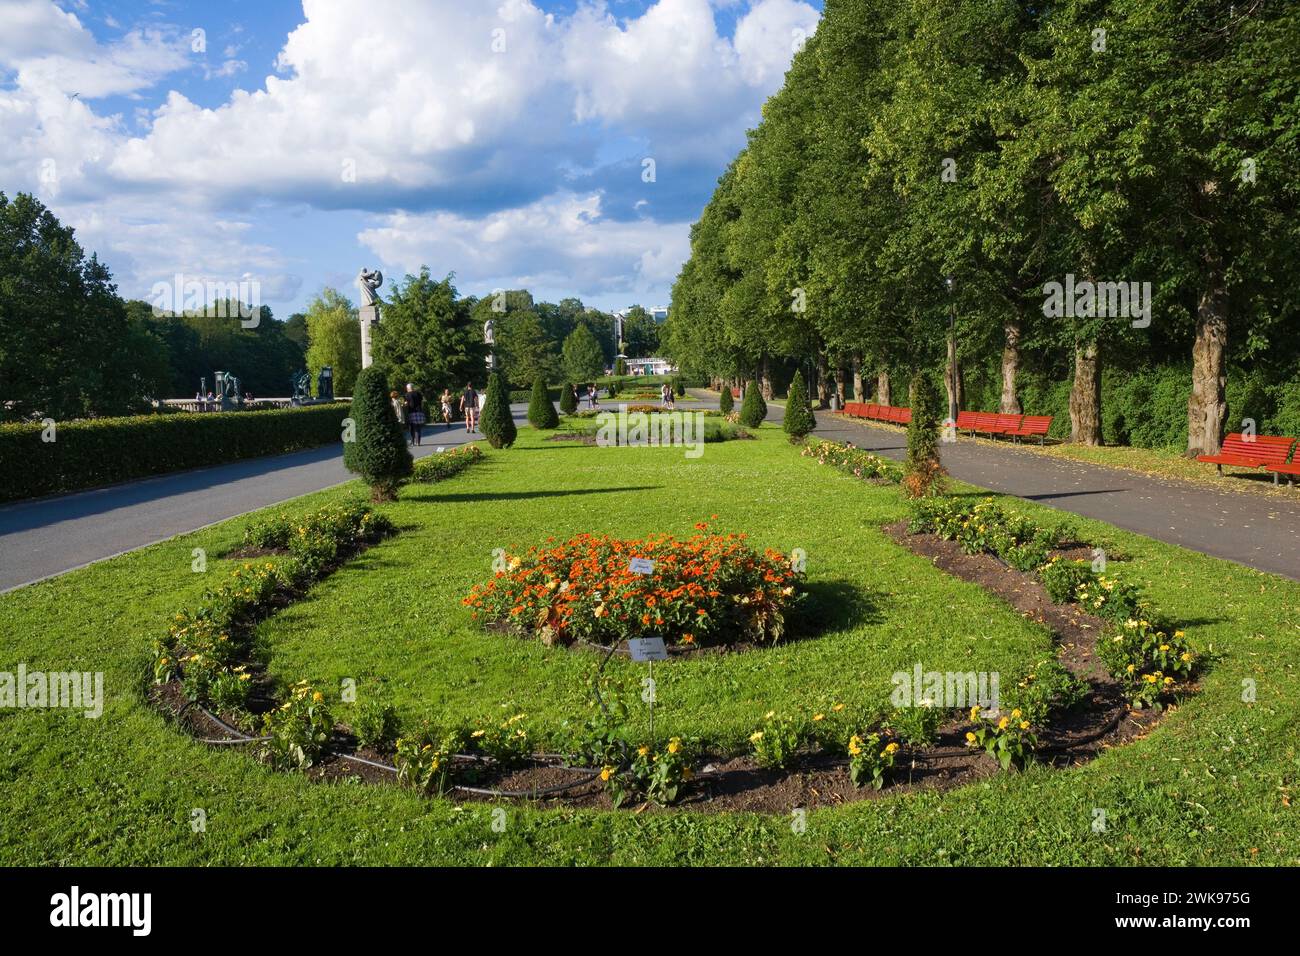 Frogner Park chiamato anche "Vigeland Park" a Oslo, Norvegia. È l'attrazione turistica più visitata della Norvegia Foto Stock